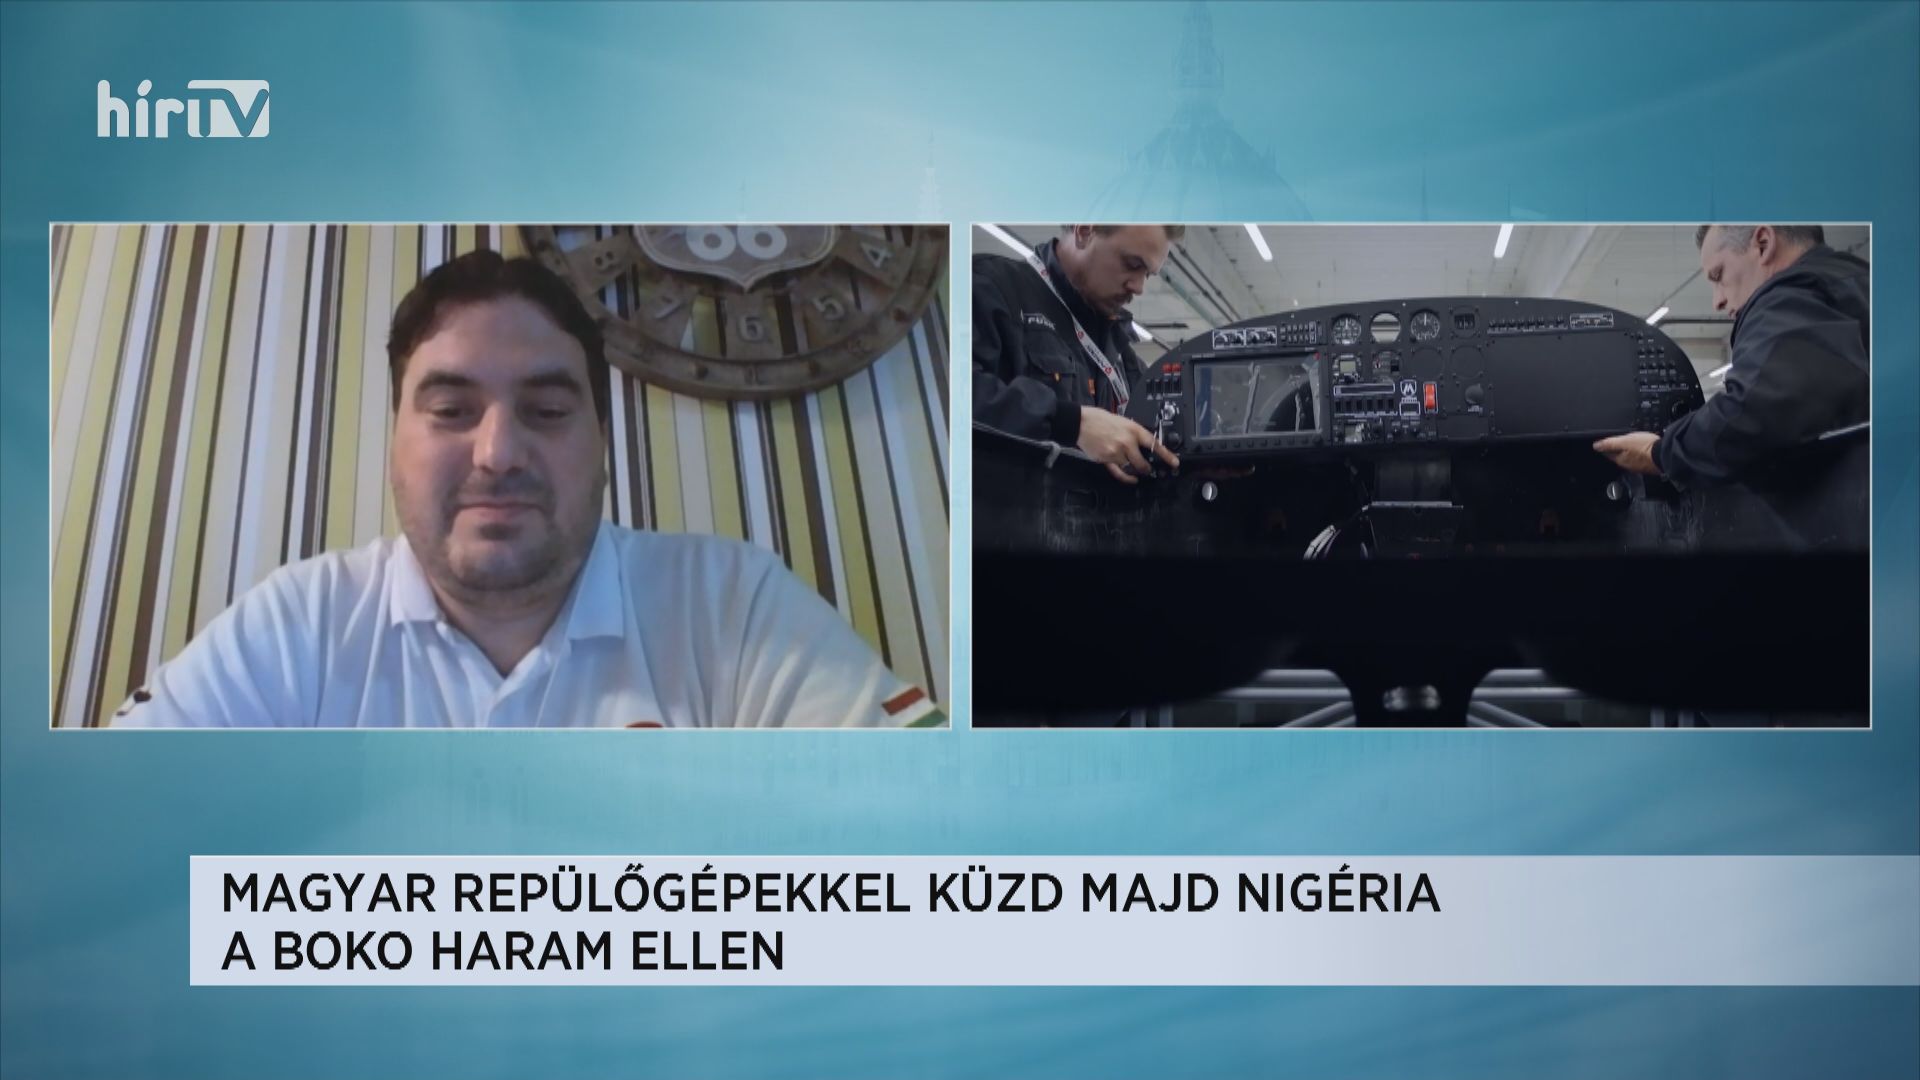 Boros László: Magyar repülőgépekkel küzd Nigéria az iszlamista terrorszervezet ellen